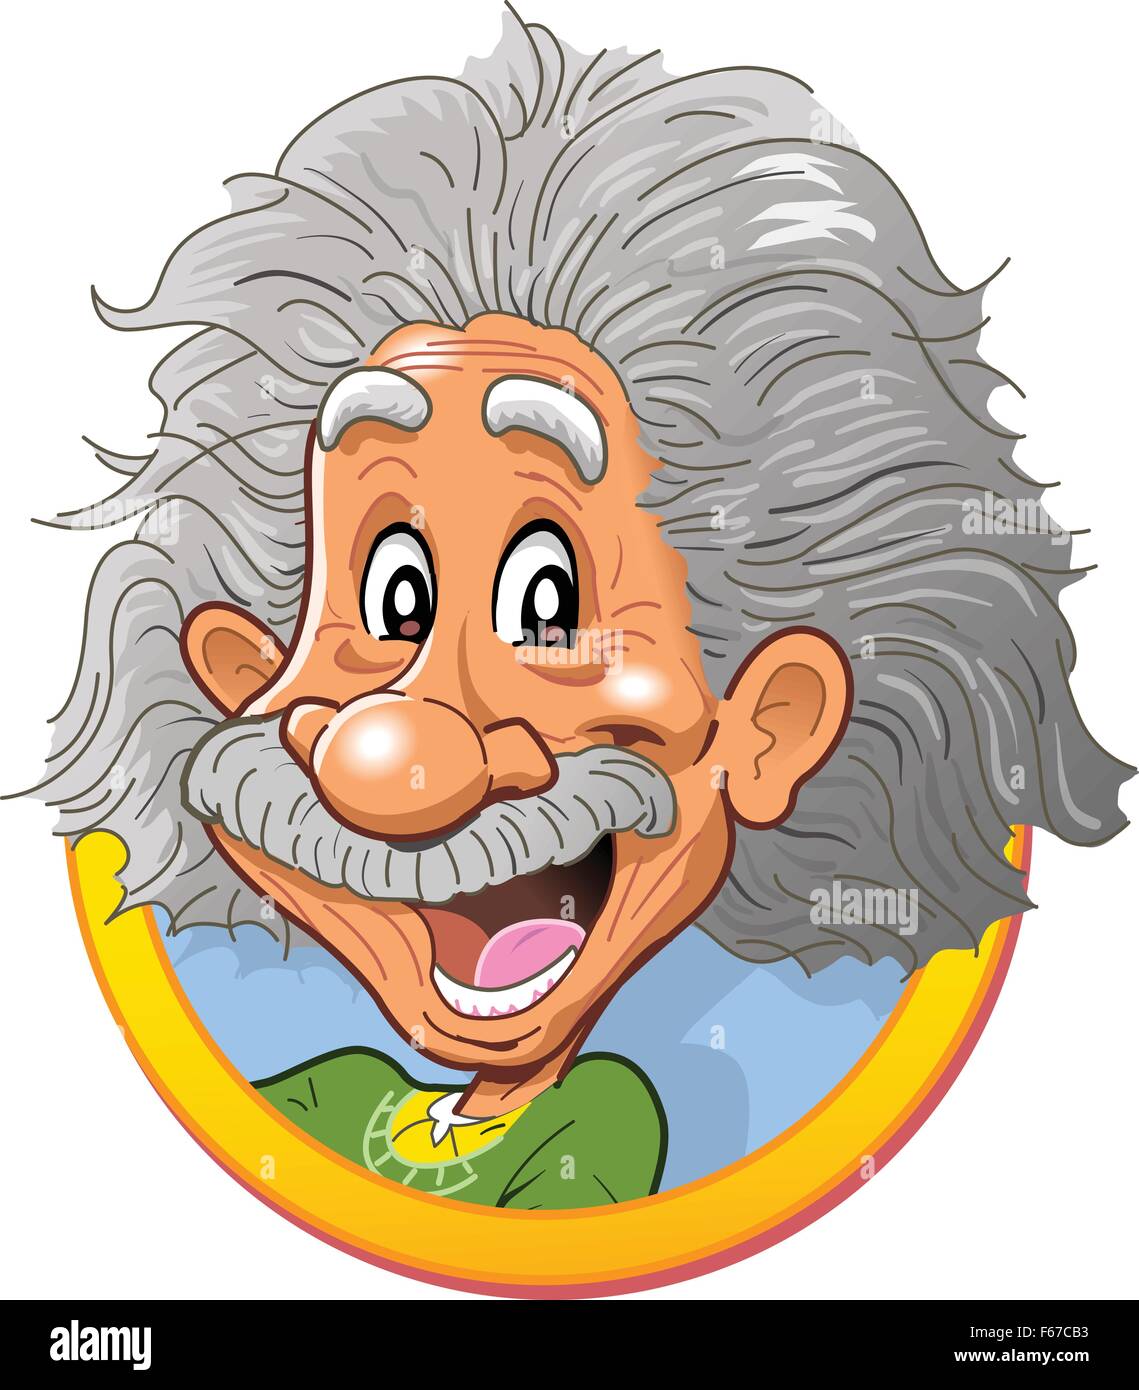 Divertimento felice testa vignette di Albert Einstein testa Illustrazione Vettoriale